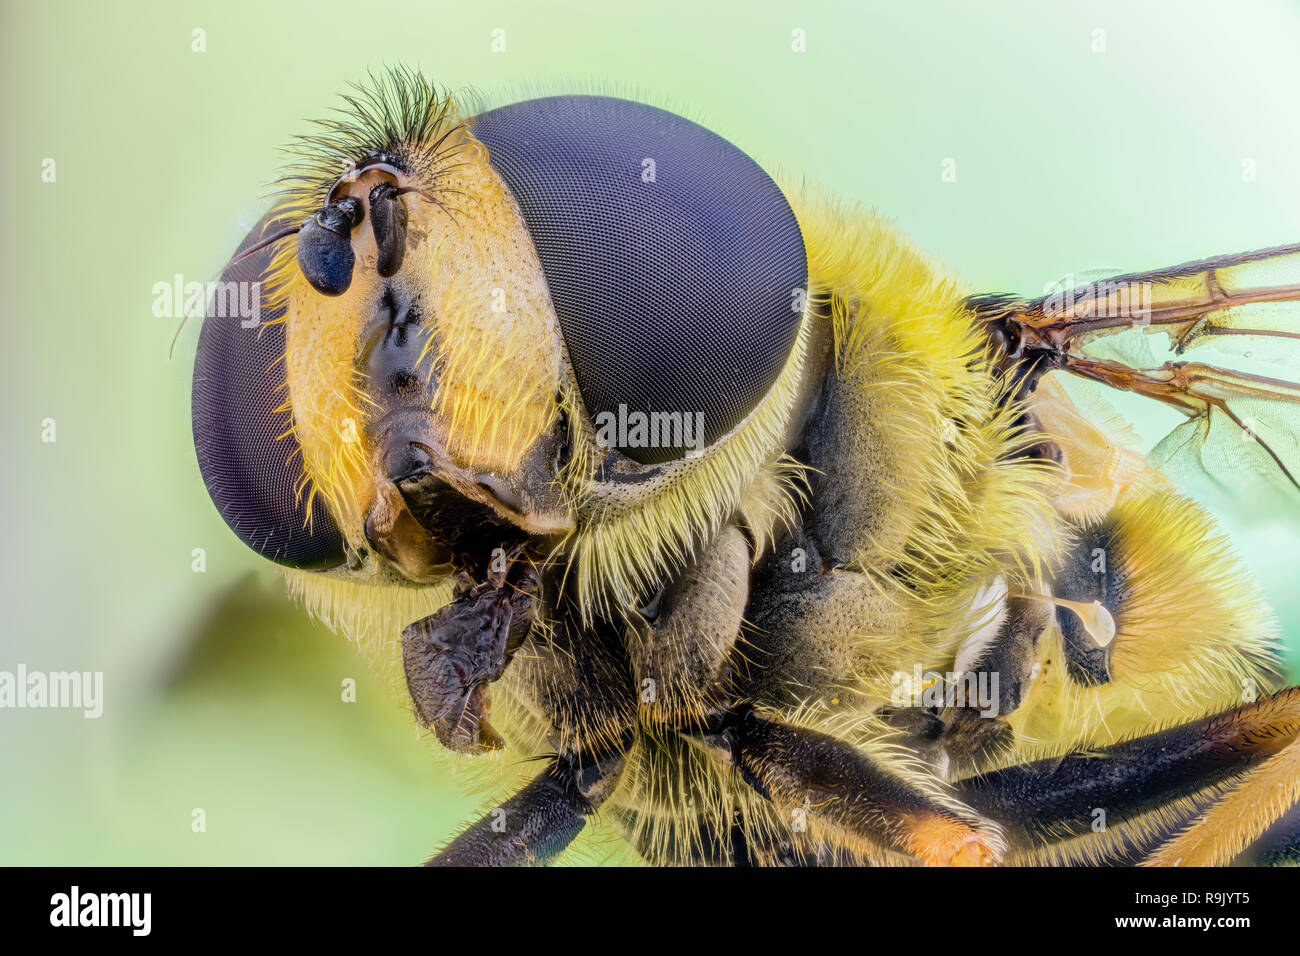 Totenkopfschwebfliege, Myathropa florea, Dead Head Hoverfly - Microscopio extrema de apilamiento Foto de stock